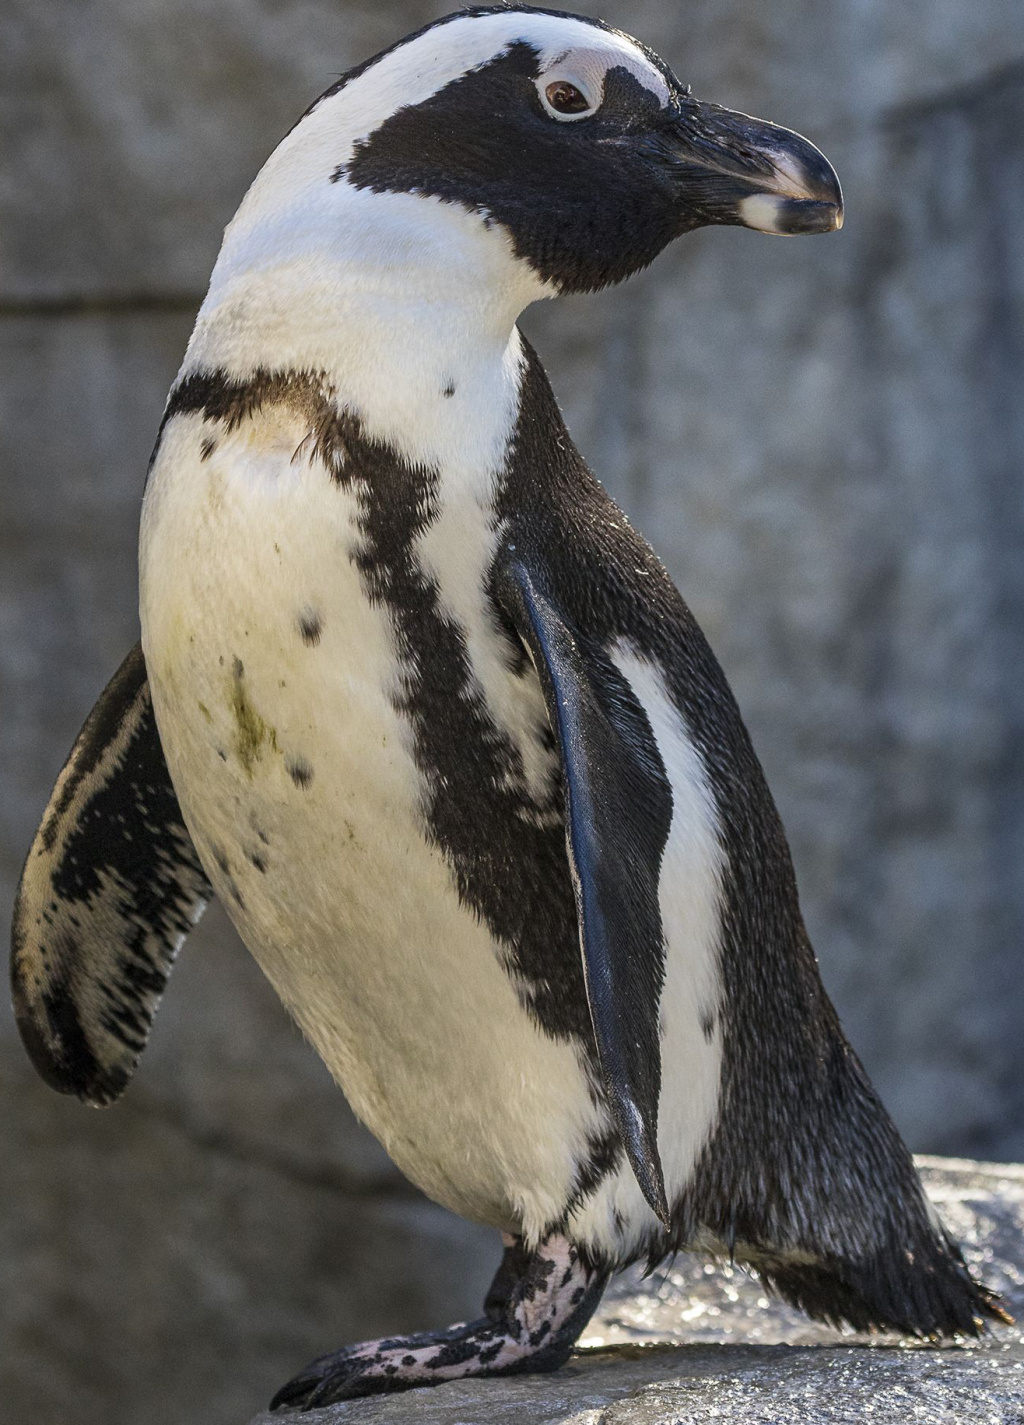 killer penguin zoo tycoon 2